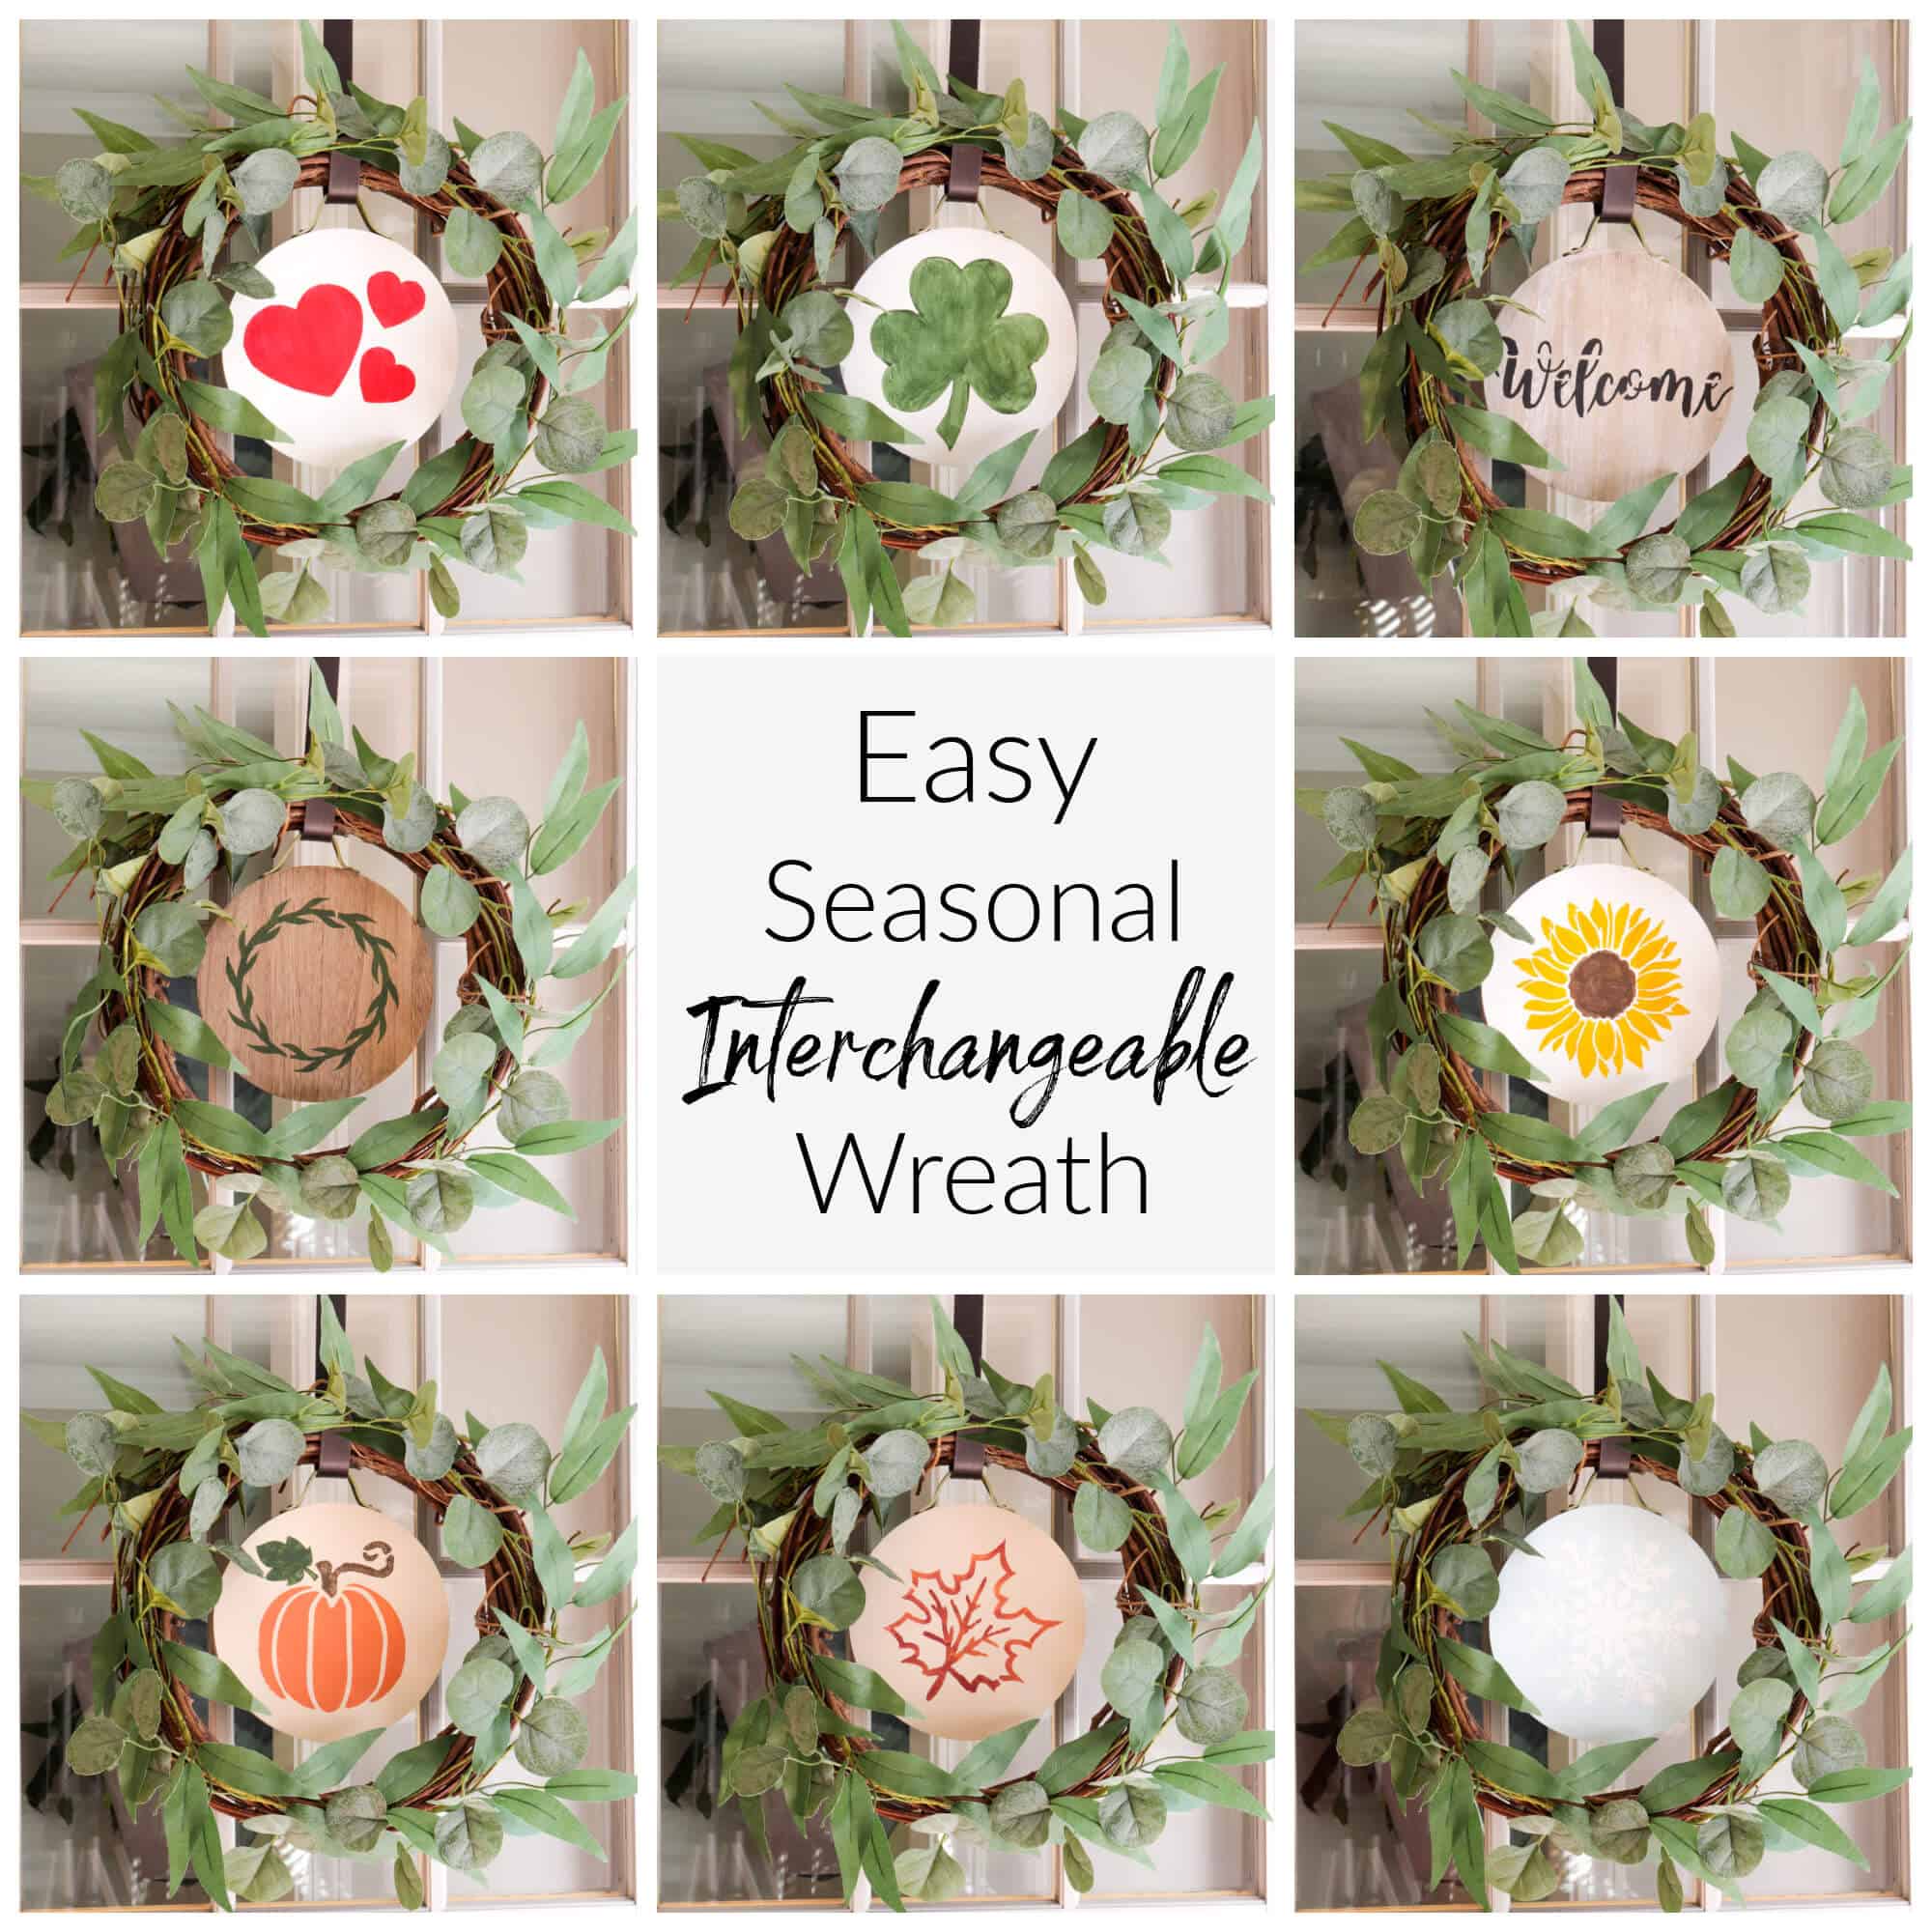 Jen from Noting Grace creating an 
easy seasonal interchangeable wreath